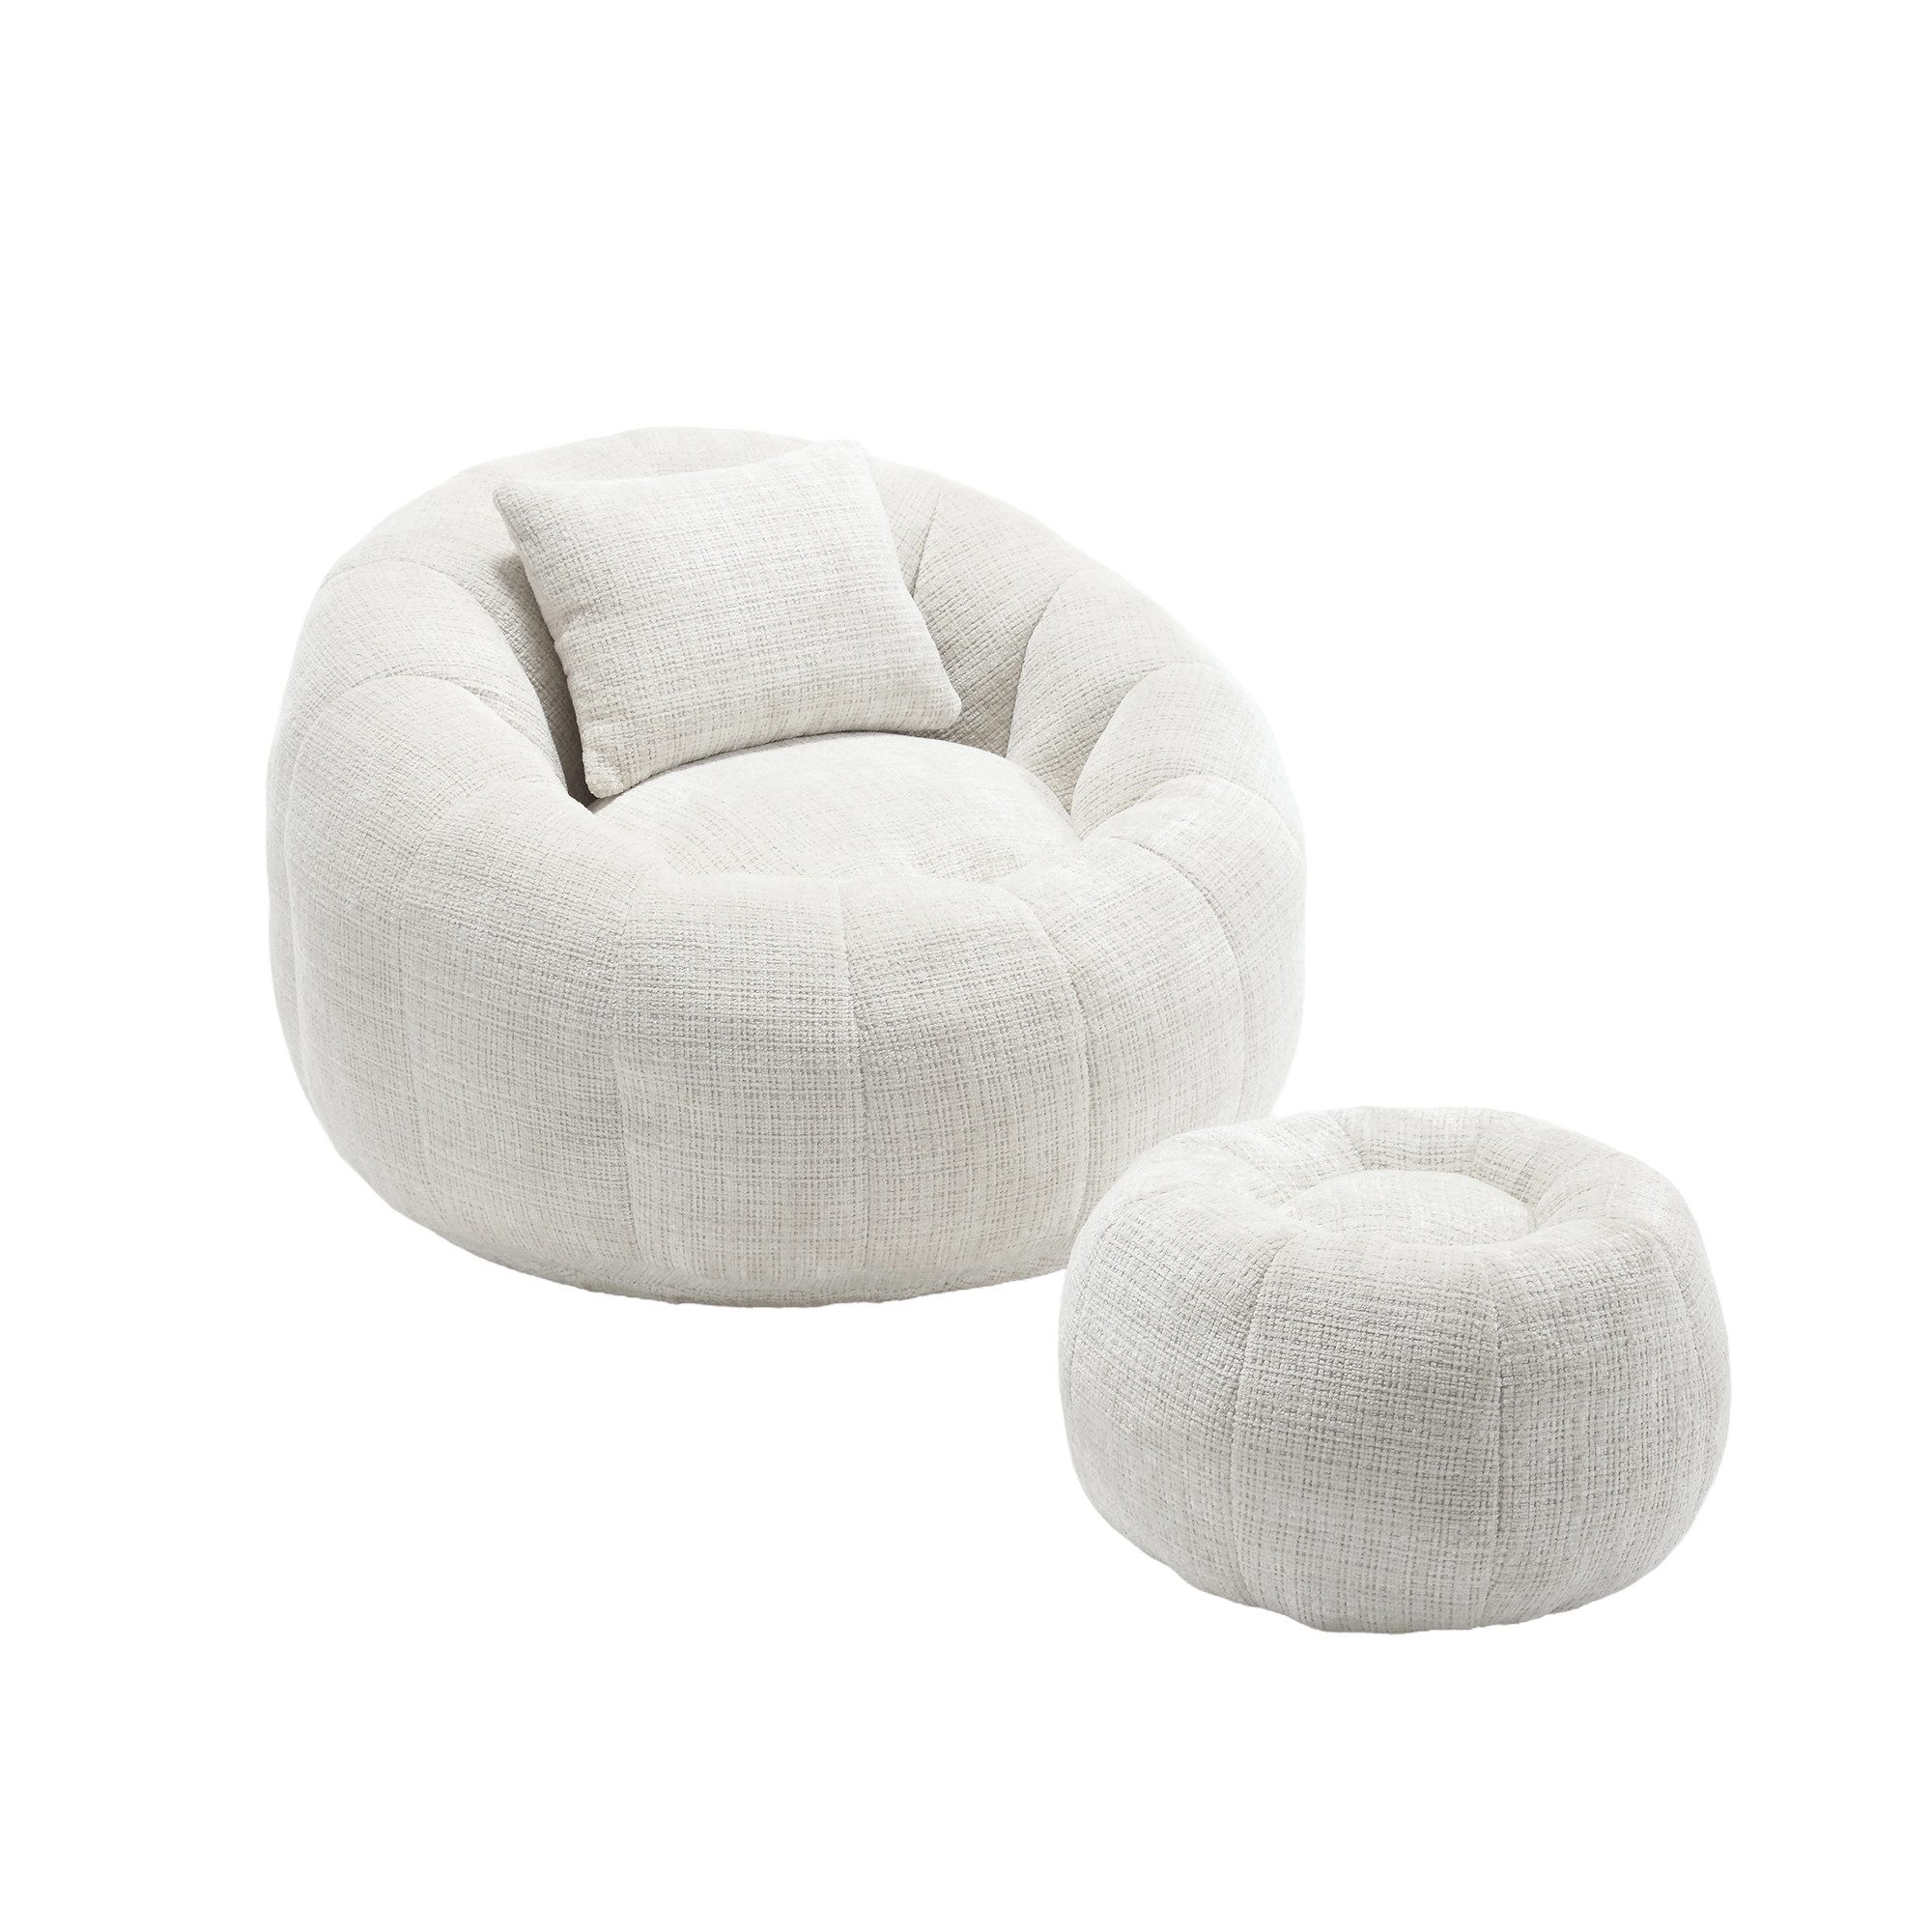 REDOM Stuhl 360°-freie Rotation super weiche Couch (hoher Dichte Memory-Schaum gefüllter erwachsener Sitzsack-Stuhl und Wohnzimmer), runder drehbarer Sitzsack-Stuhl